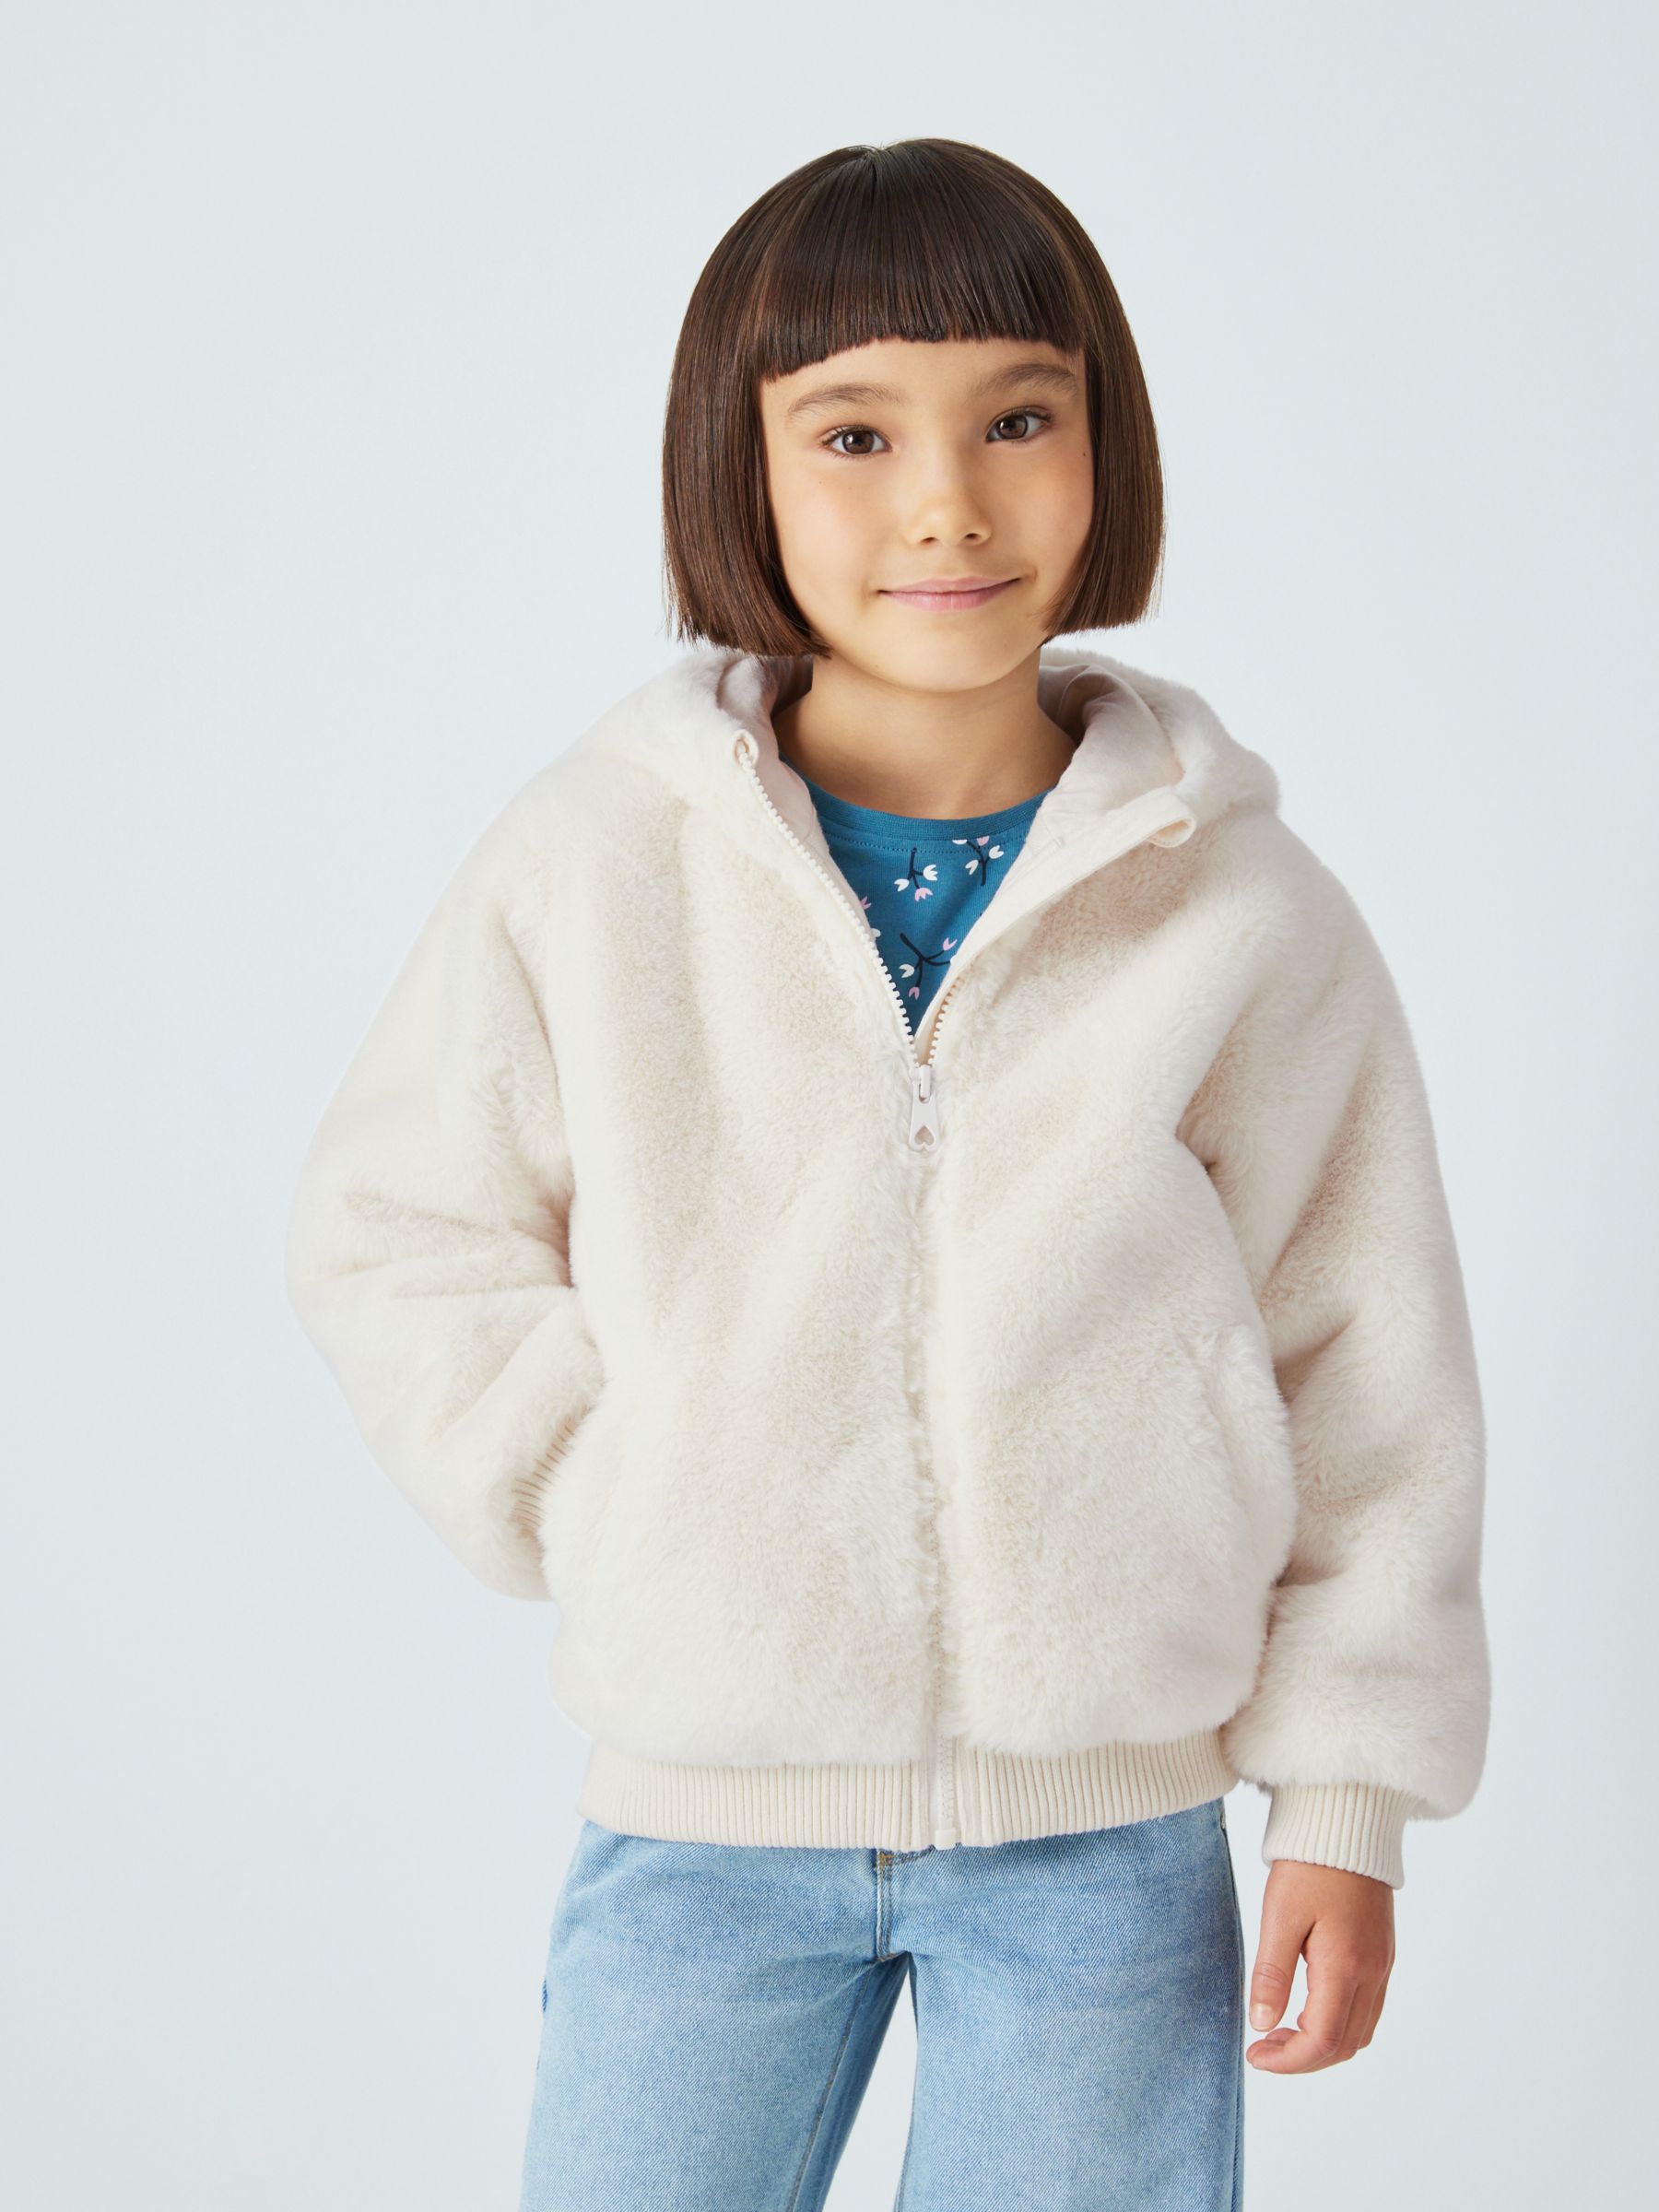 Kids Girls Winter Fleece Coat Luxury Faux Fur Jacket Warm Outerwear